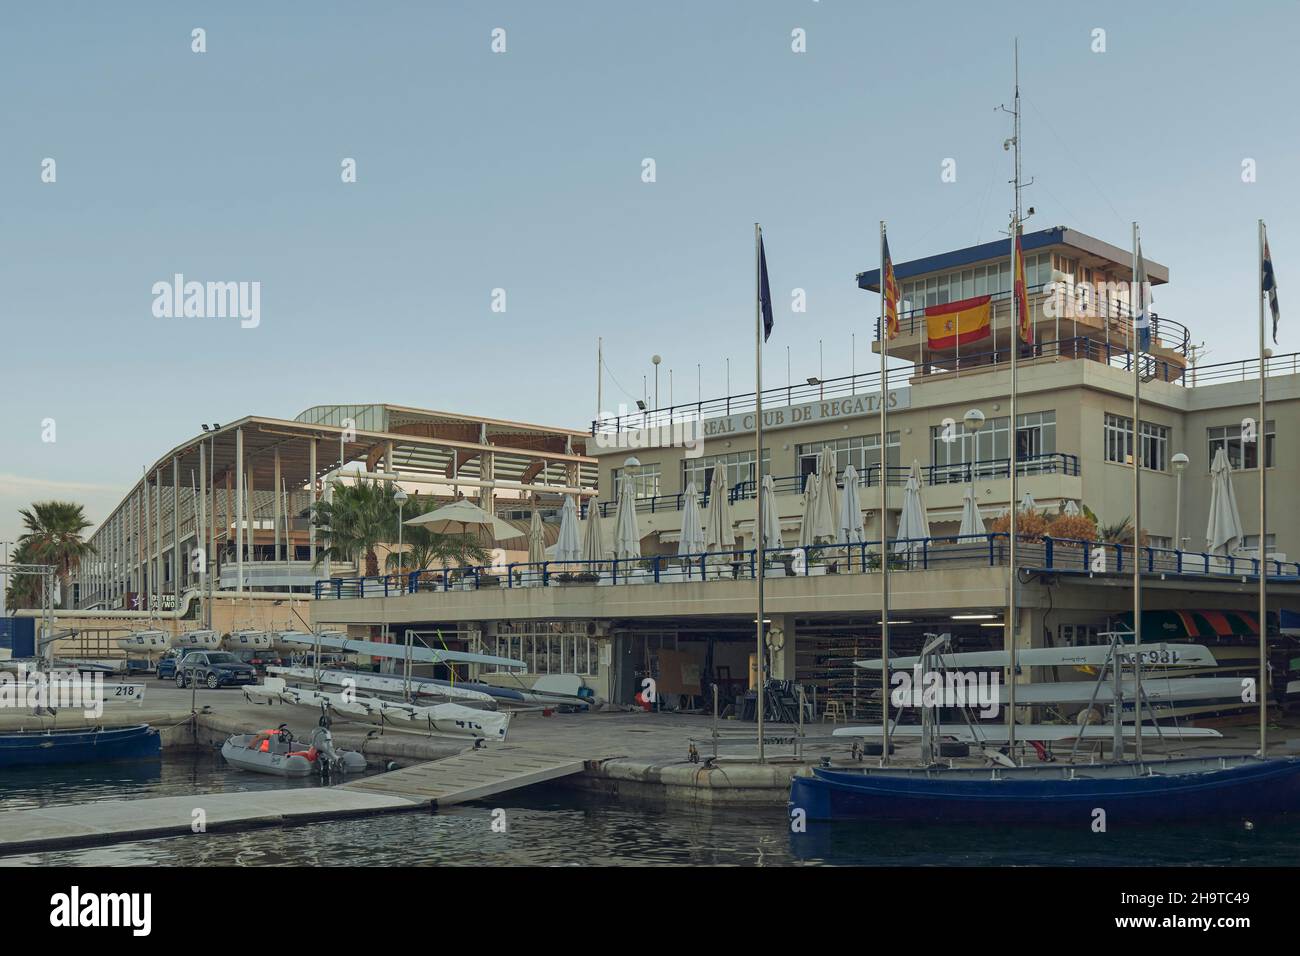 Bau des echten Club deportivo de regatas im Hafen der Stadt Alicante, Alacant, Comunitat Valenciana, spanische Gemeinschaft, Spanien, Europa Stockfoto